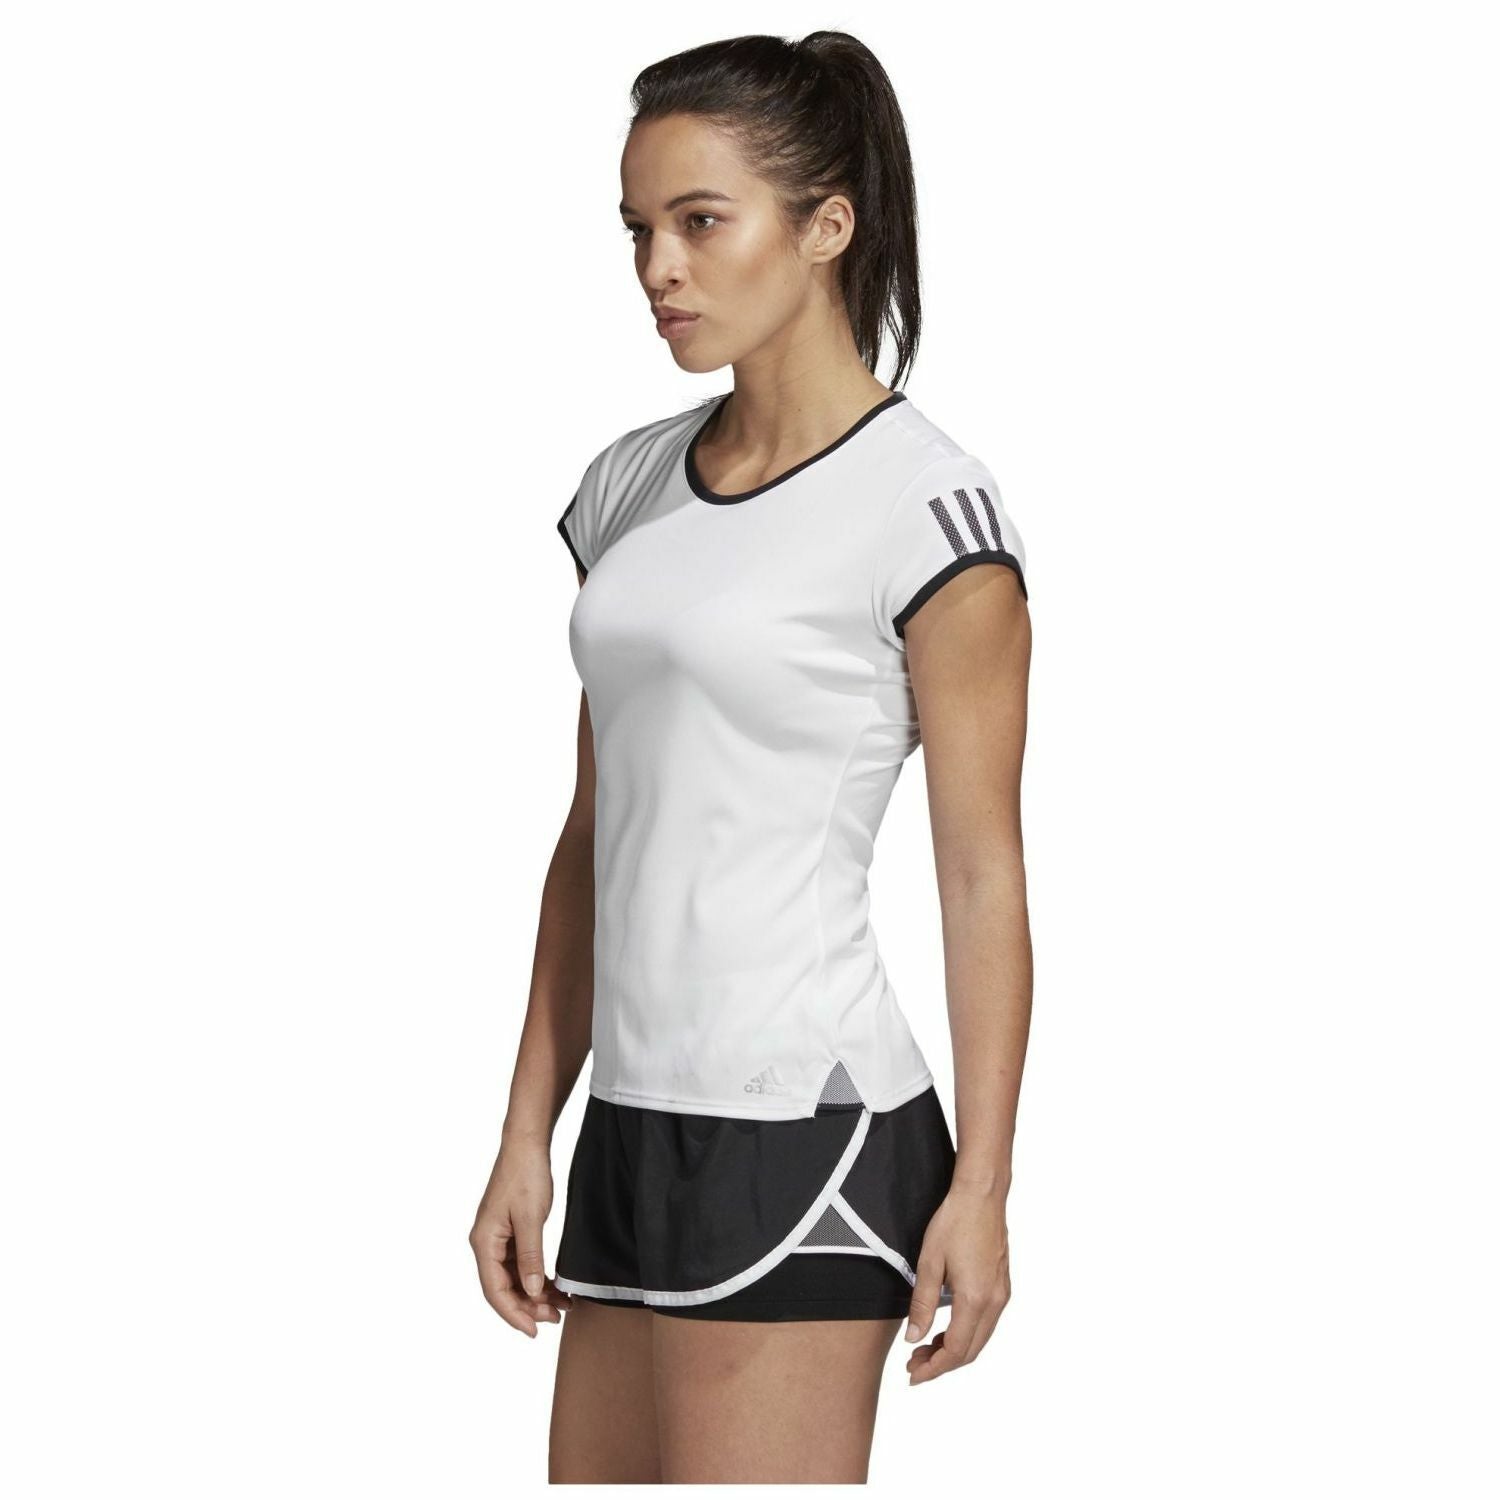 Adidas Women's 3-Stripes Club T-shirt